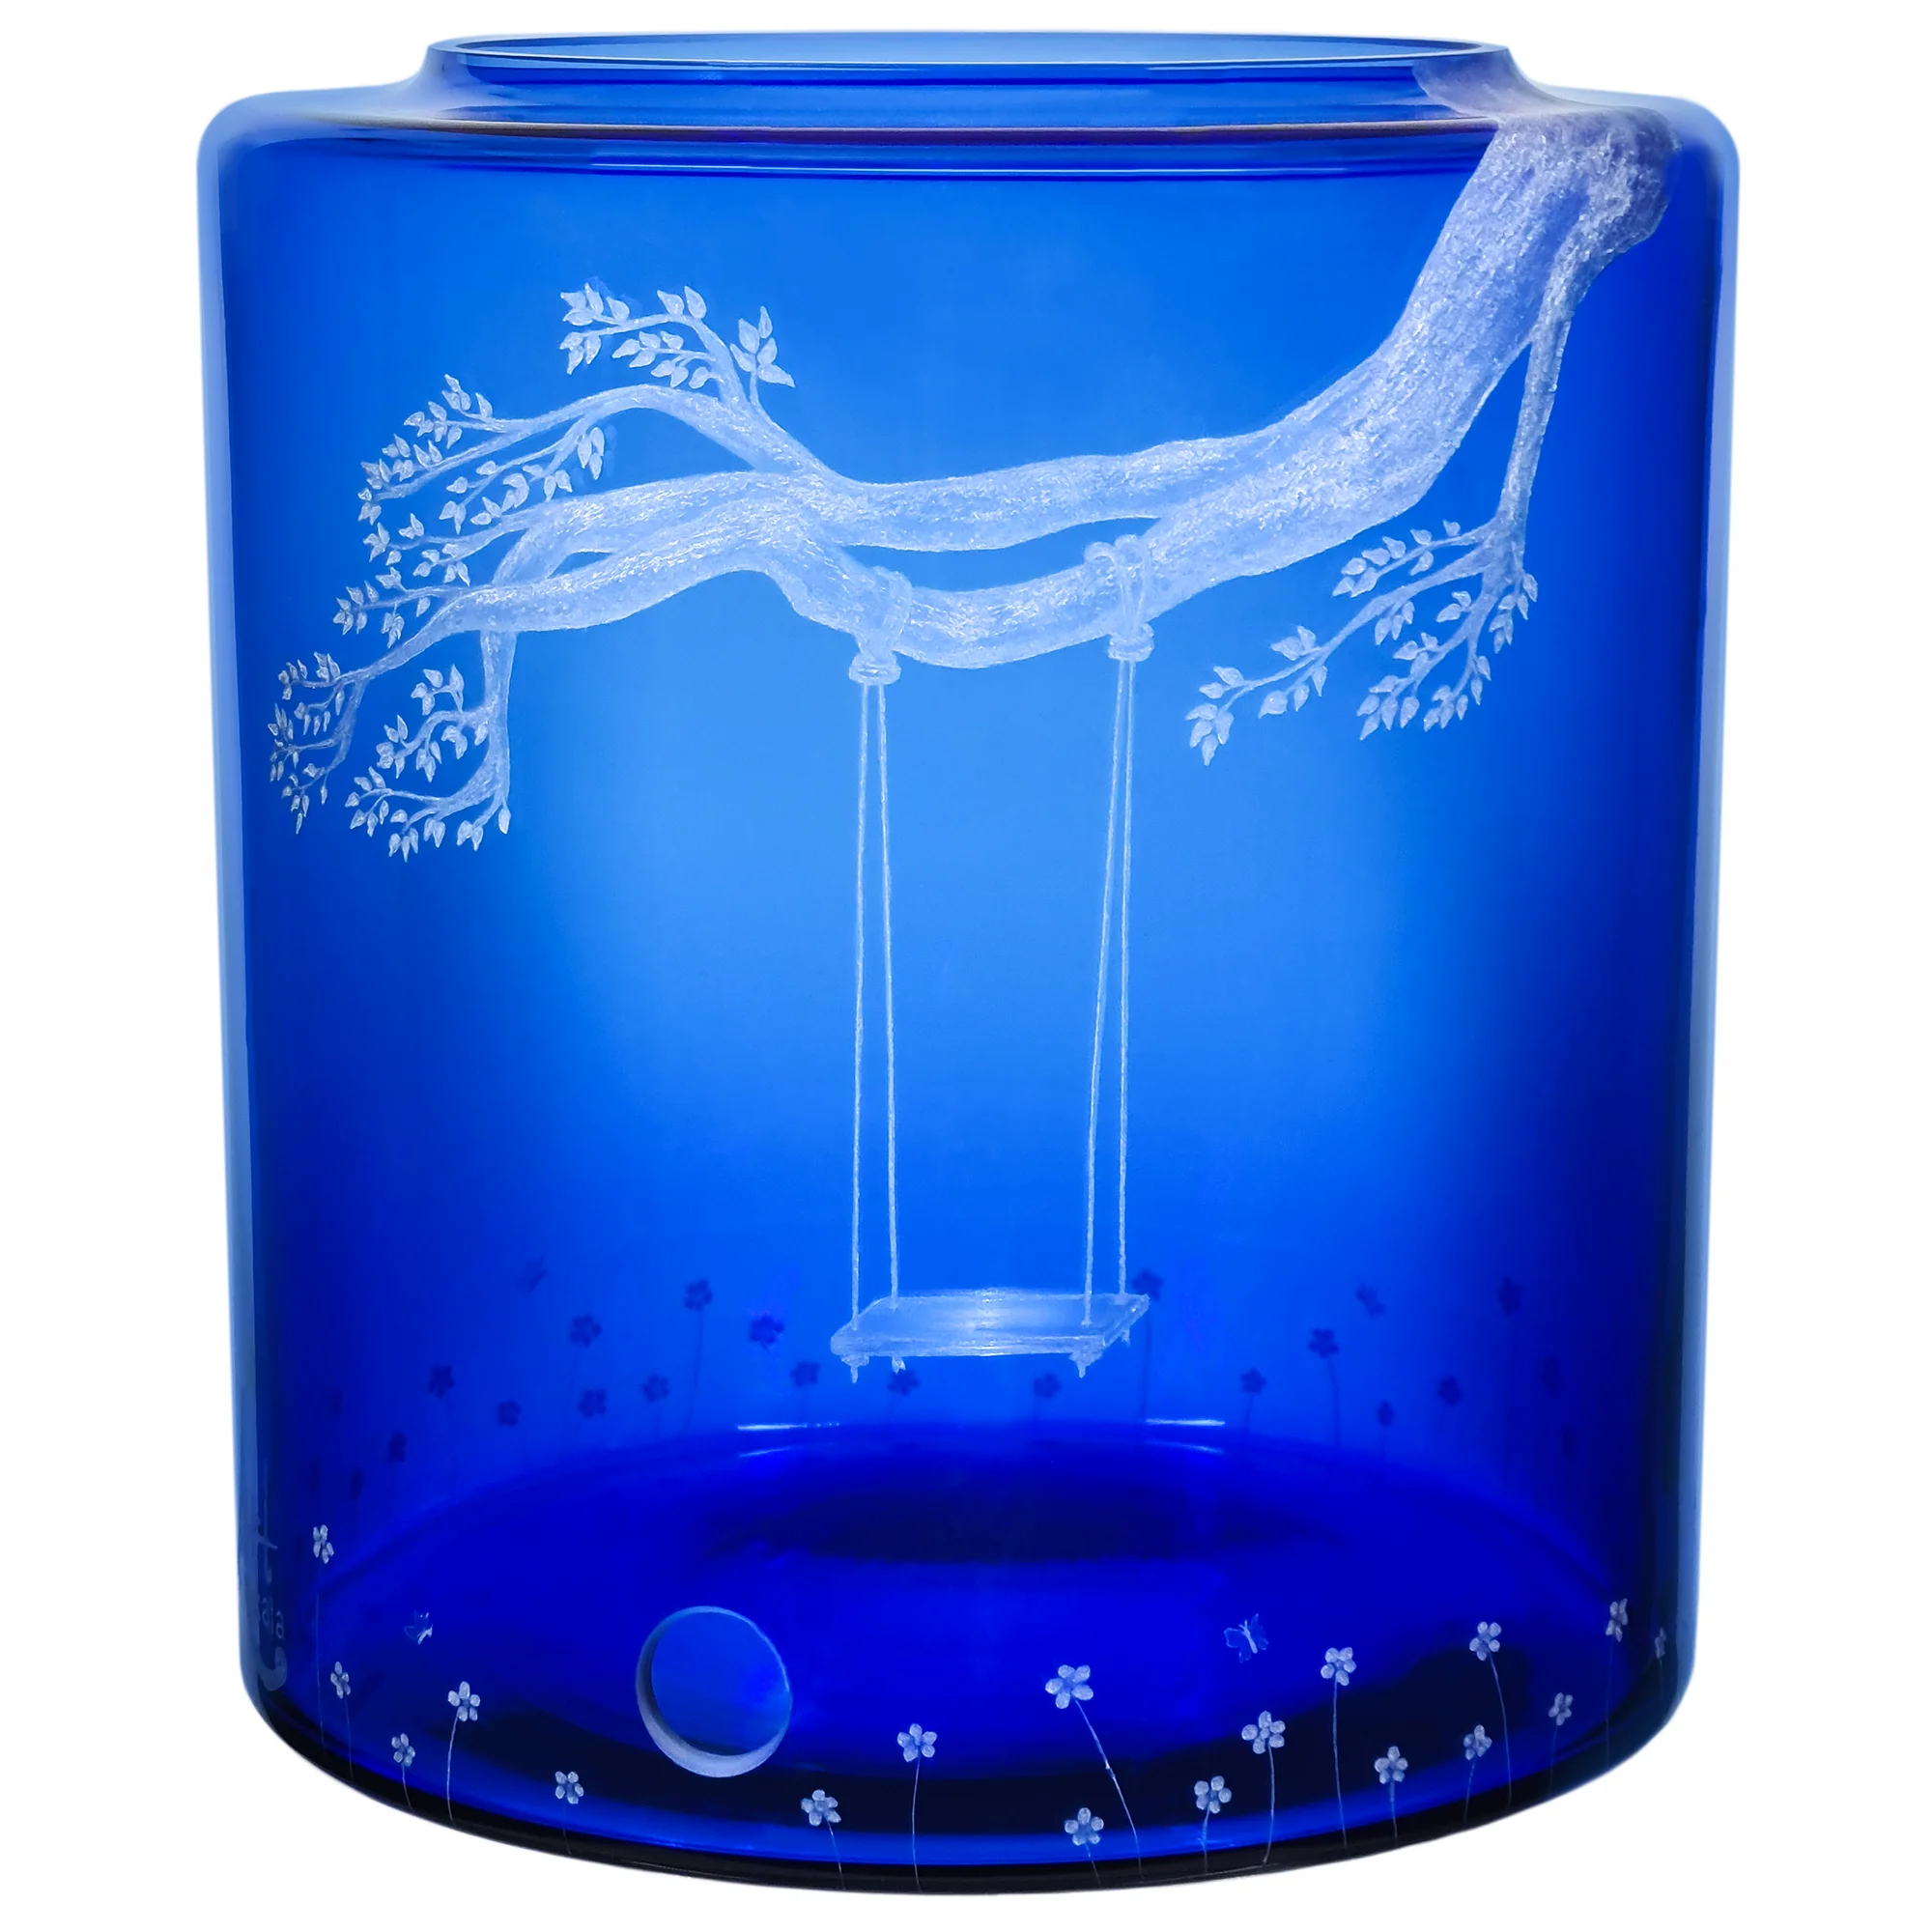 Zu sehen ist ein blauer Glastank für den Acala Mini mit einer Handgravur. Die Gravur zeigt einen starken Ast eines Baumes an dem eine Schaukel mit einem langen Seil befestigt ist. Eine Wiese mit Blumen ist unterhalb der Schaukel angedeutet.